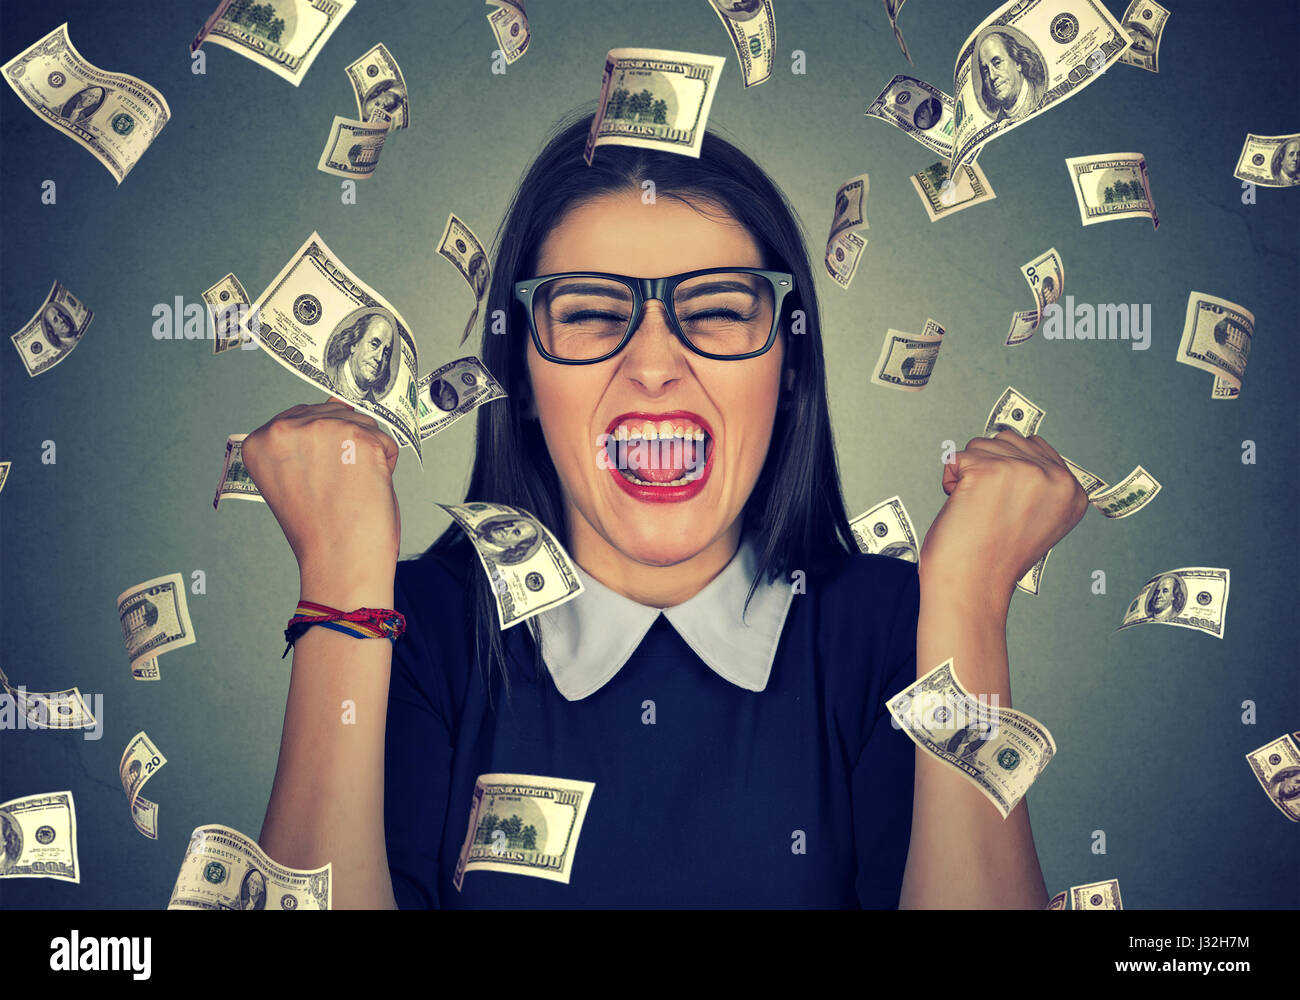 Happy woman Portrait poings pompage exulte de joie célèbre son succès sous la pluie tomber de l'argent dollar bills billets isolé sur mur gris backg Banque D'Images